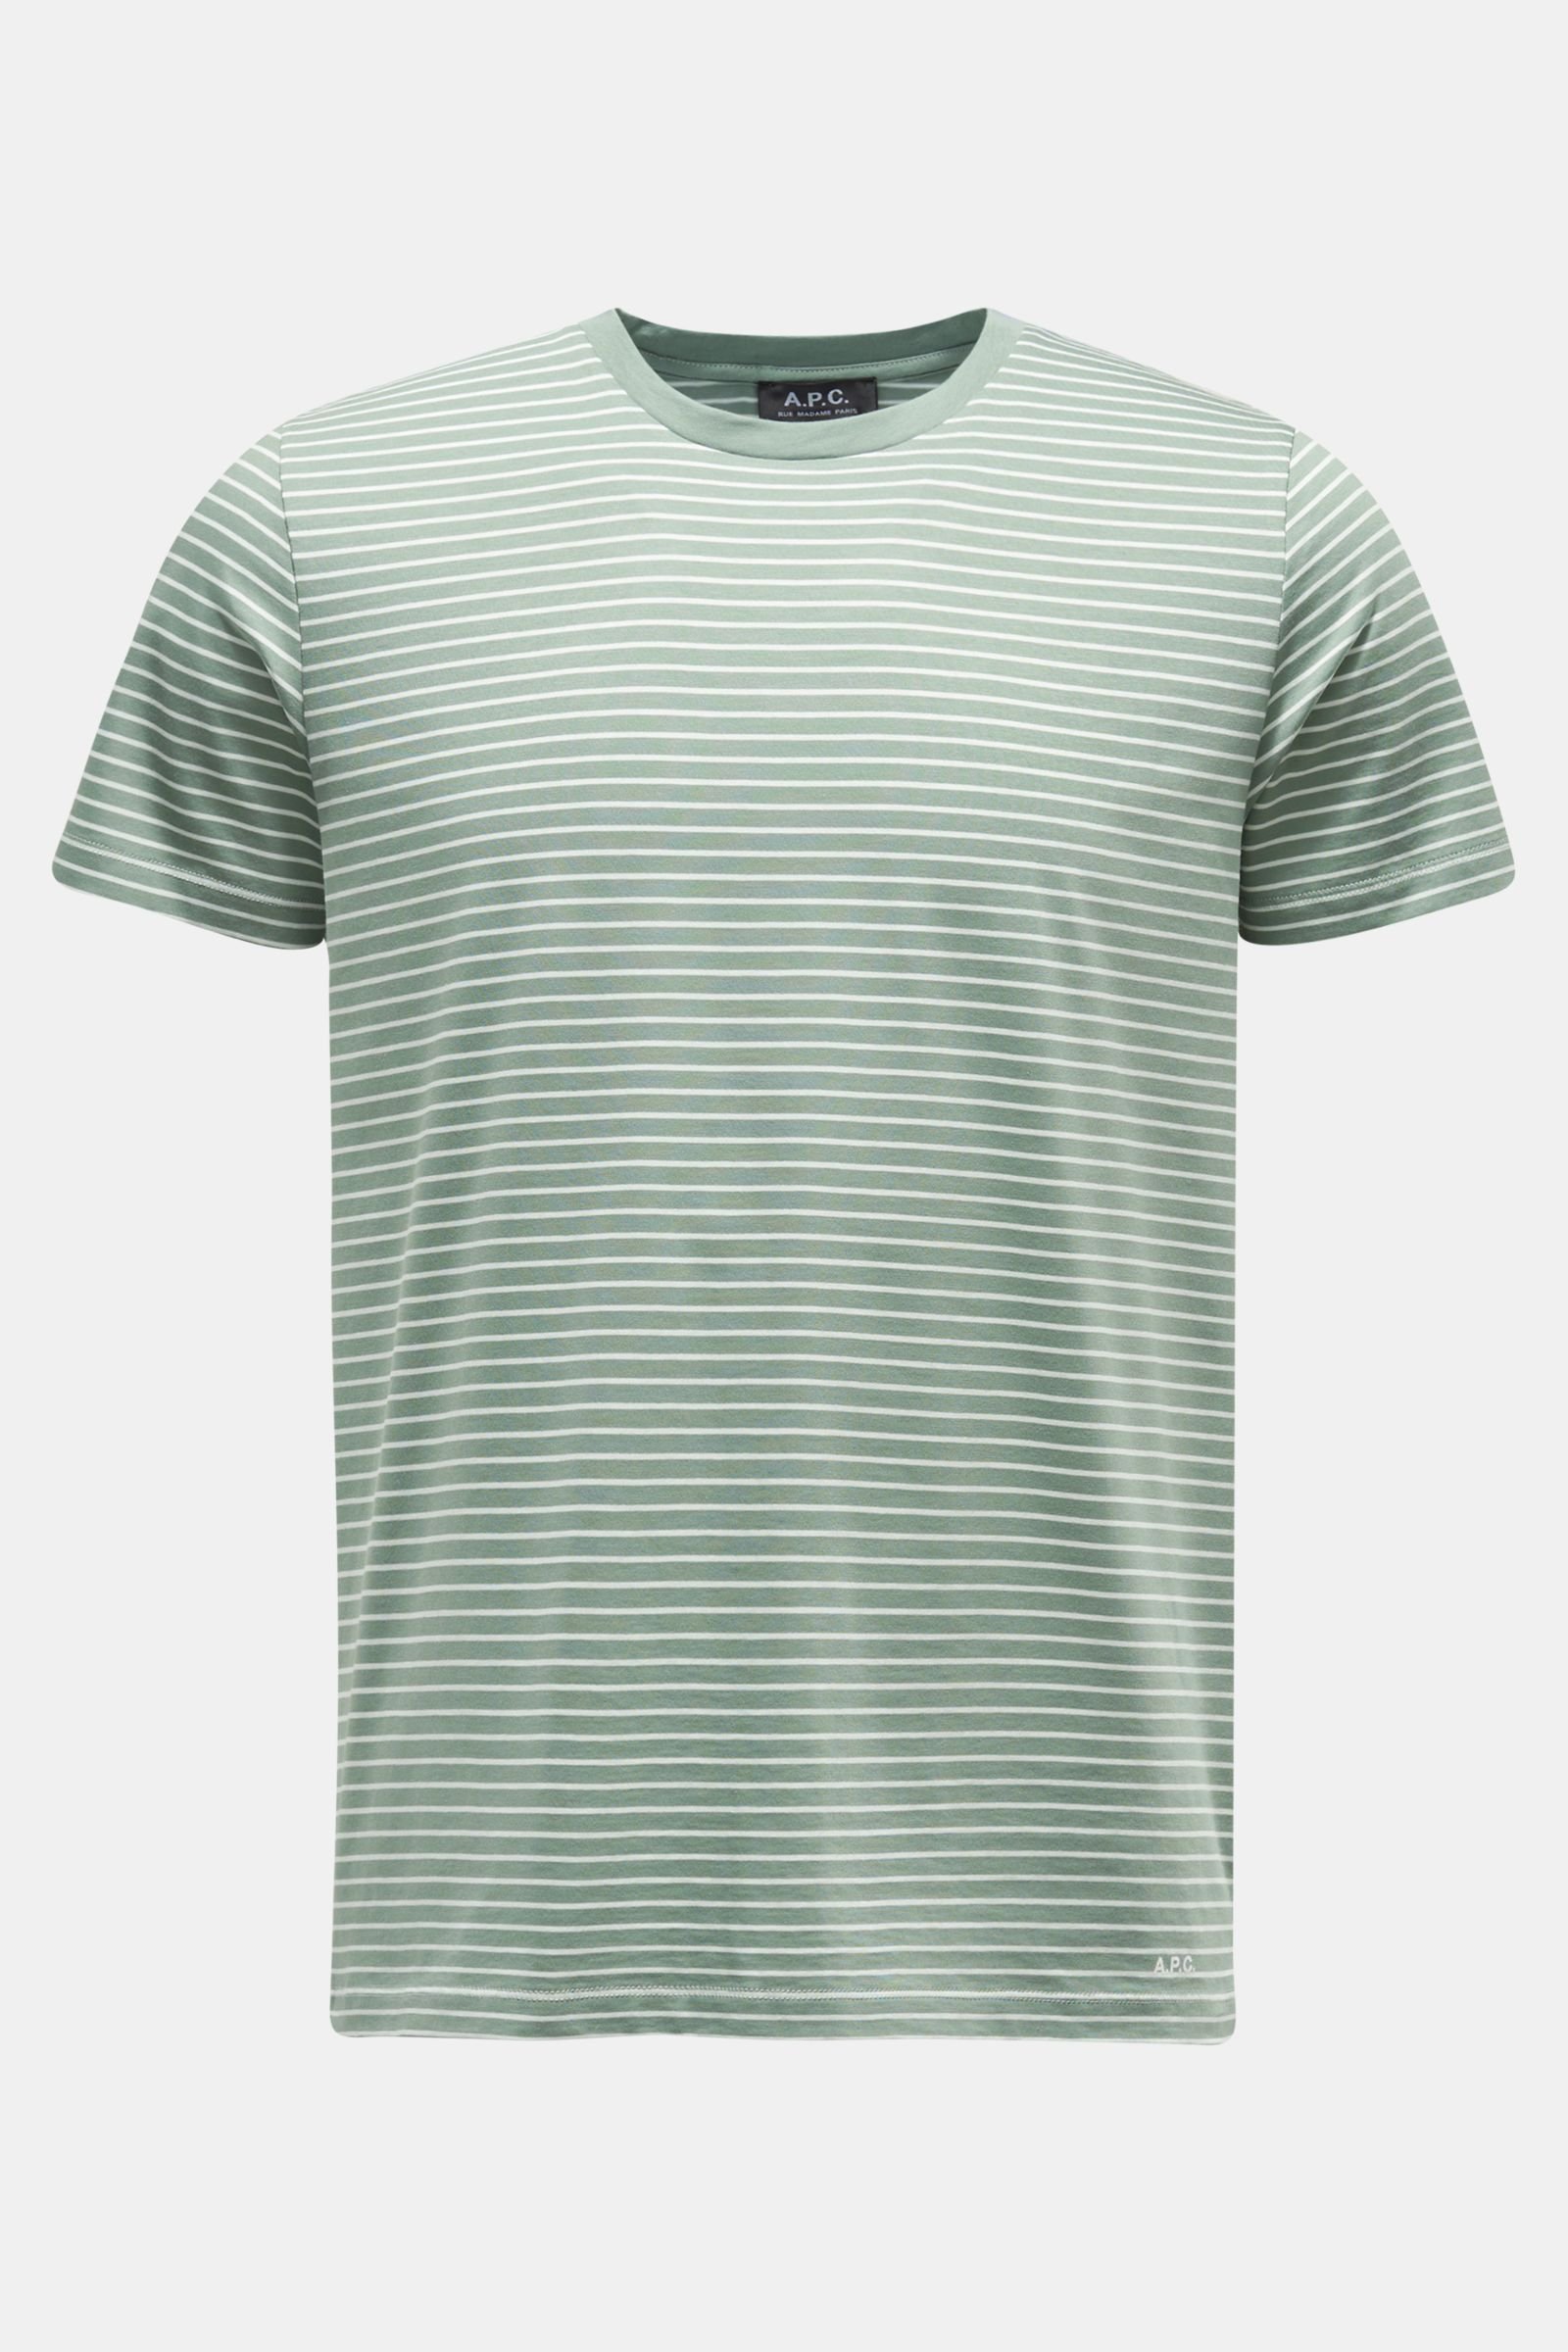 Rundhals-T-Shirt 'Aurelien' graugrün/weiß gestreift